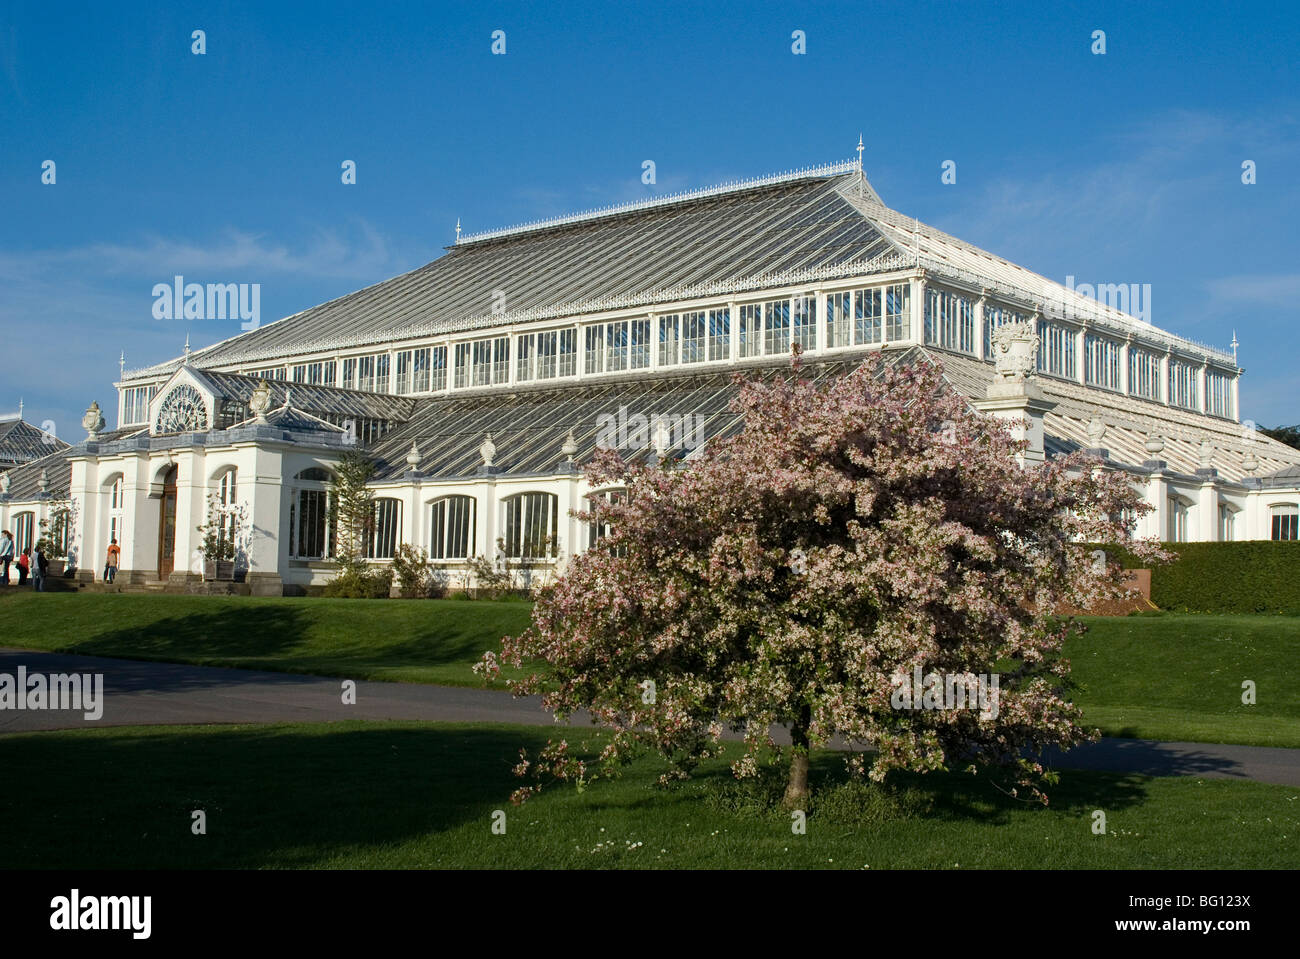 Casa temperate, Royal Botanic Gardens (Kew Gardens), il Sito Patrimonio Mondiale dell'UNESCO, Kew, Greater London, England, Regno Unito Foto Stock